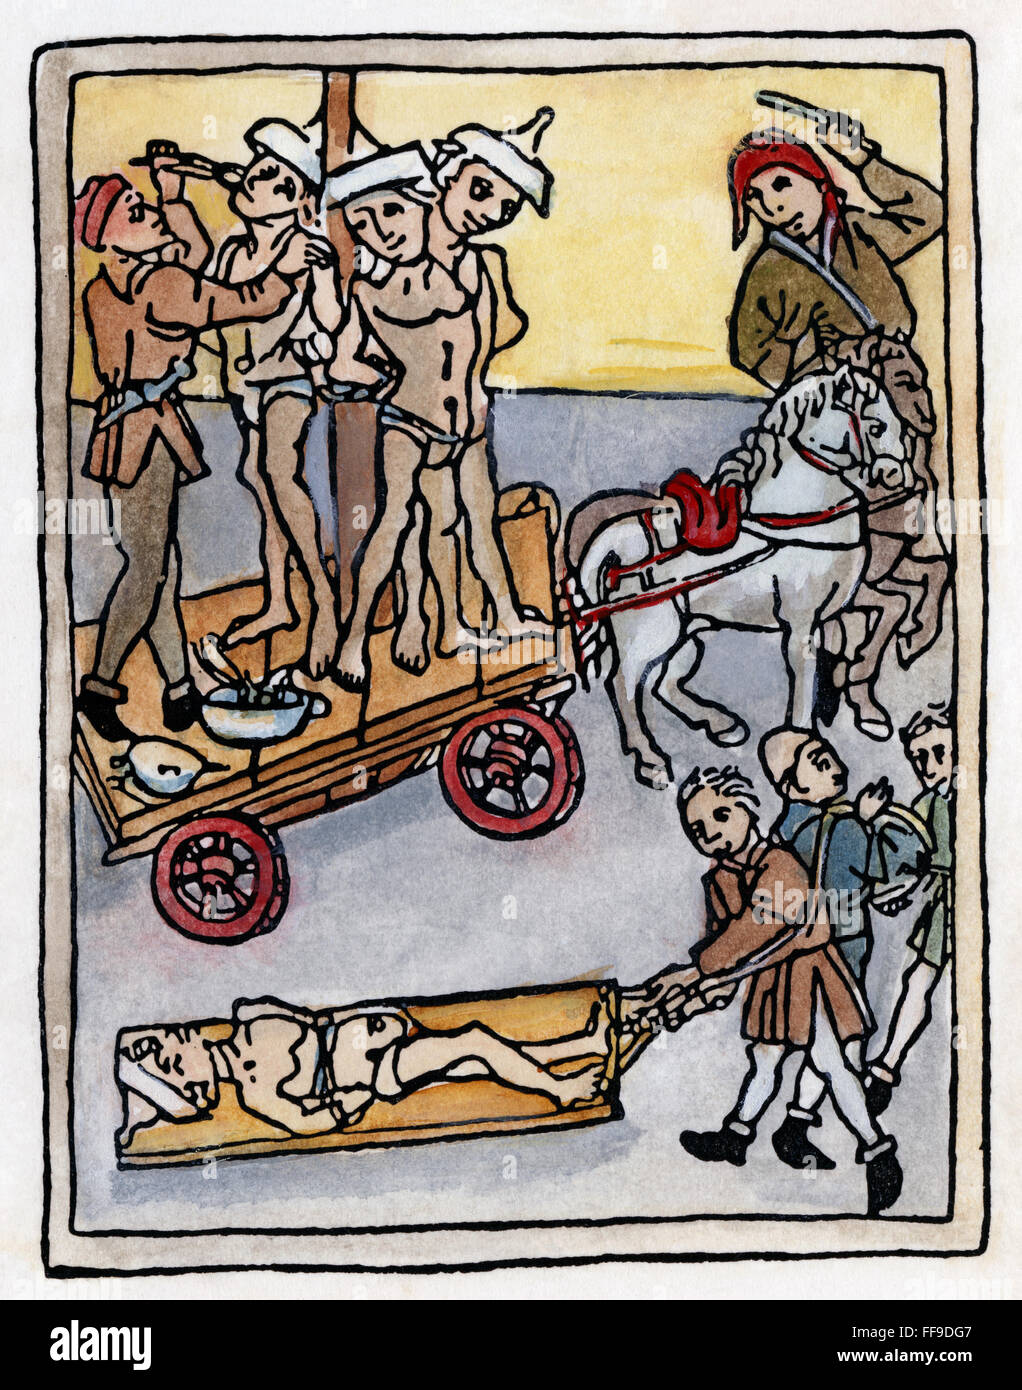 INQUISITION ESPAGNOLE. /NTorturing de Juifs. Gravure sur bois, 1475. Banque D'Images